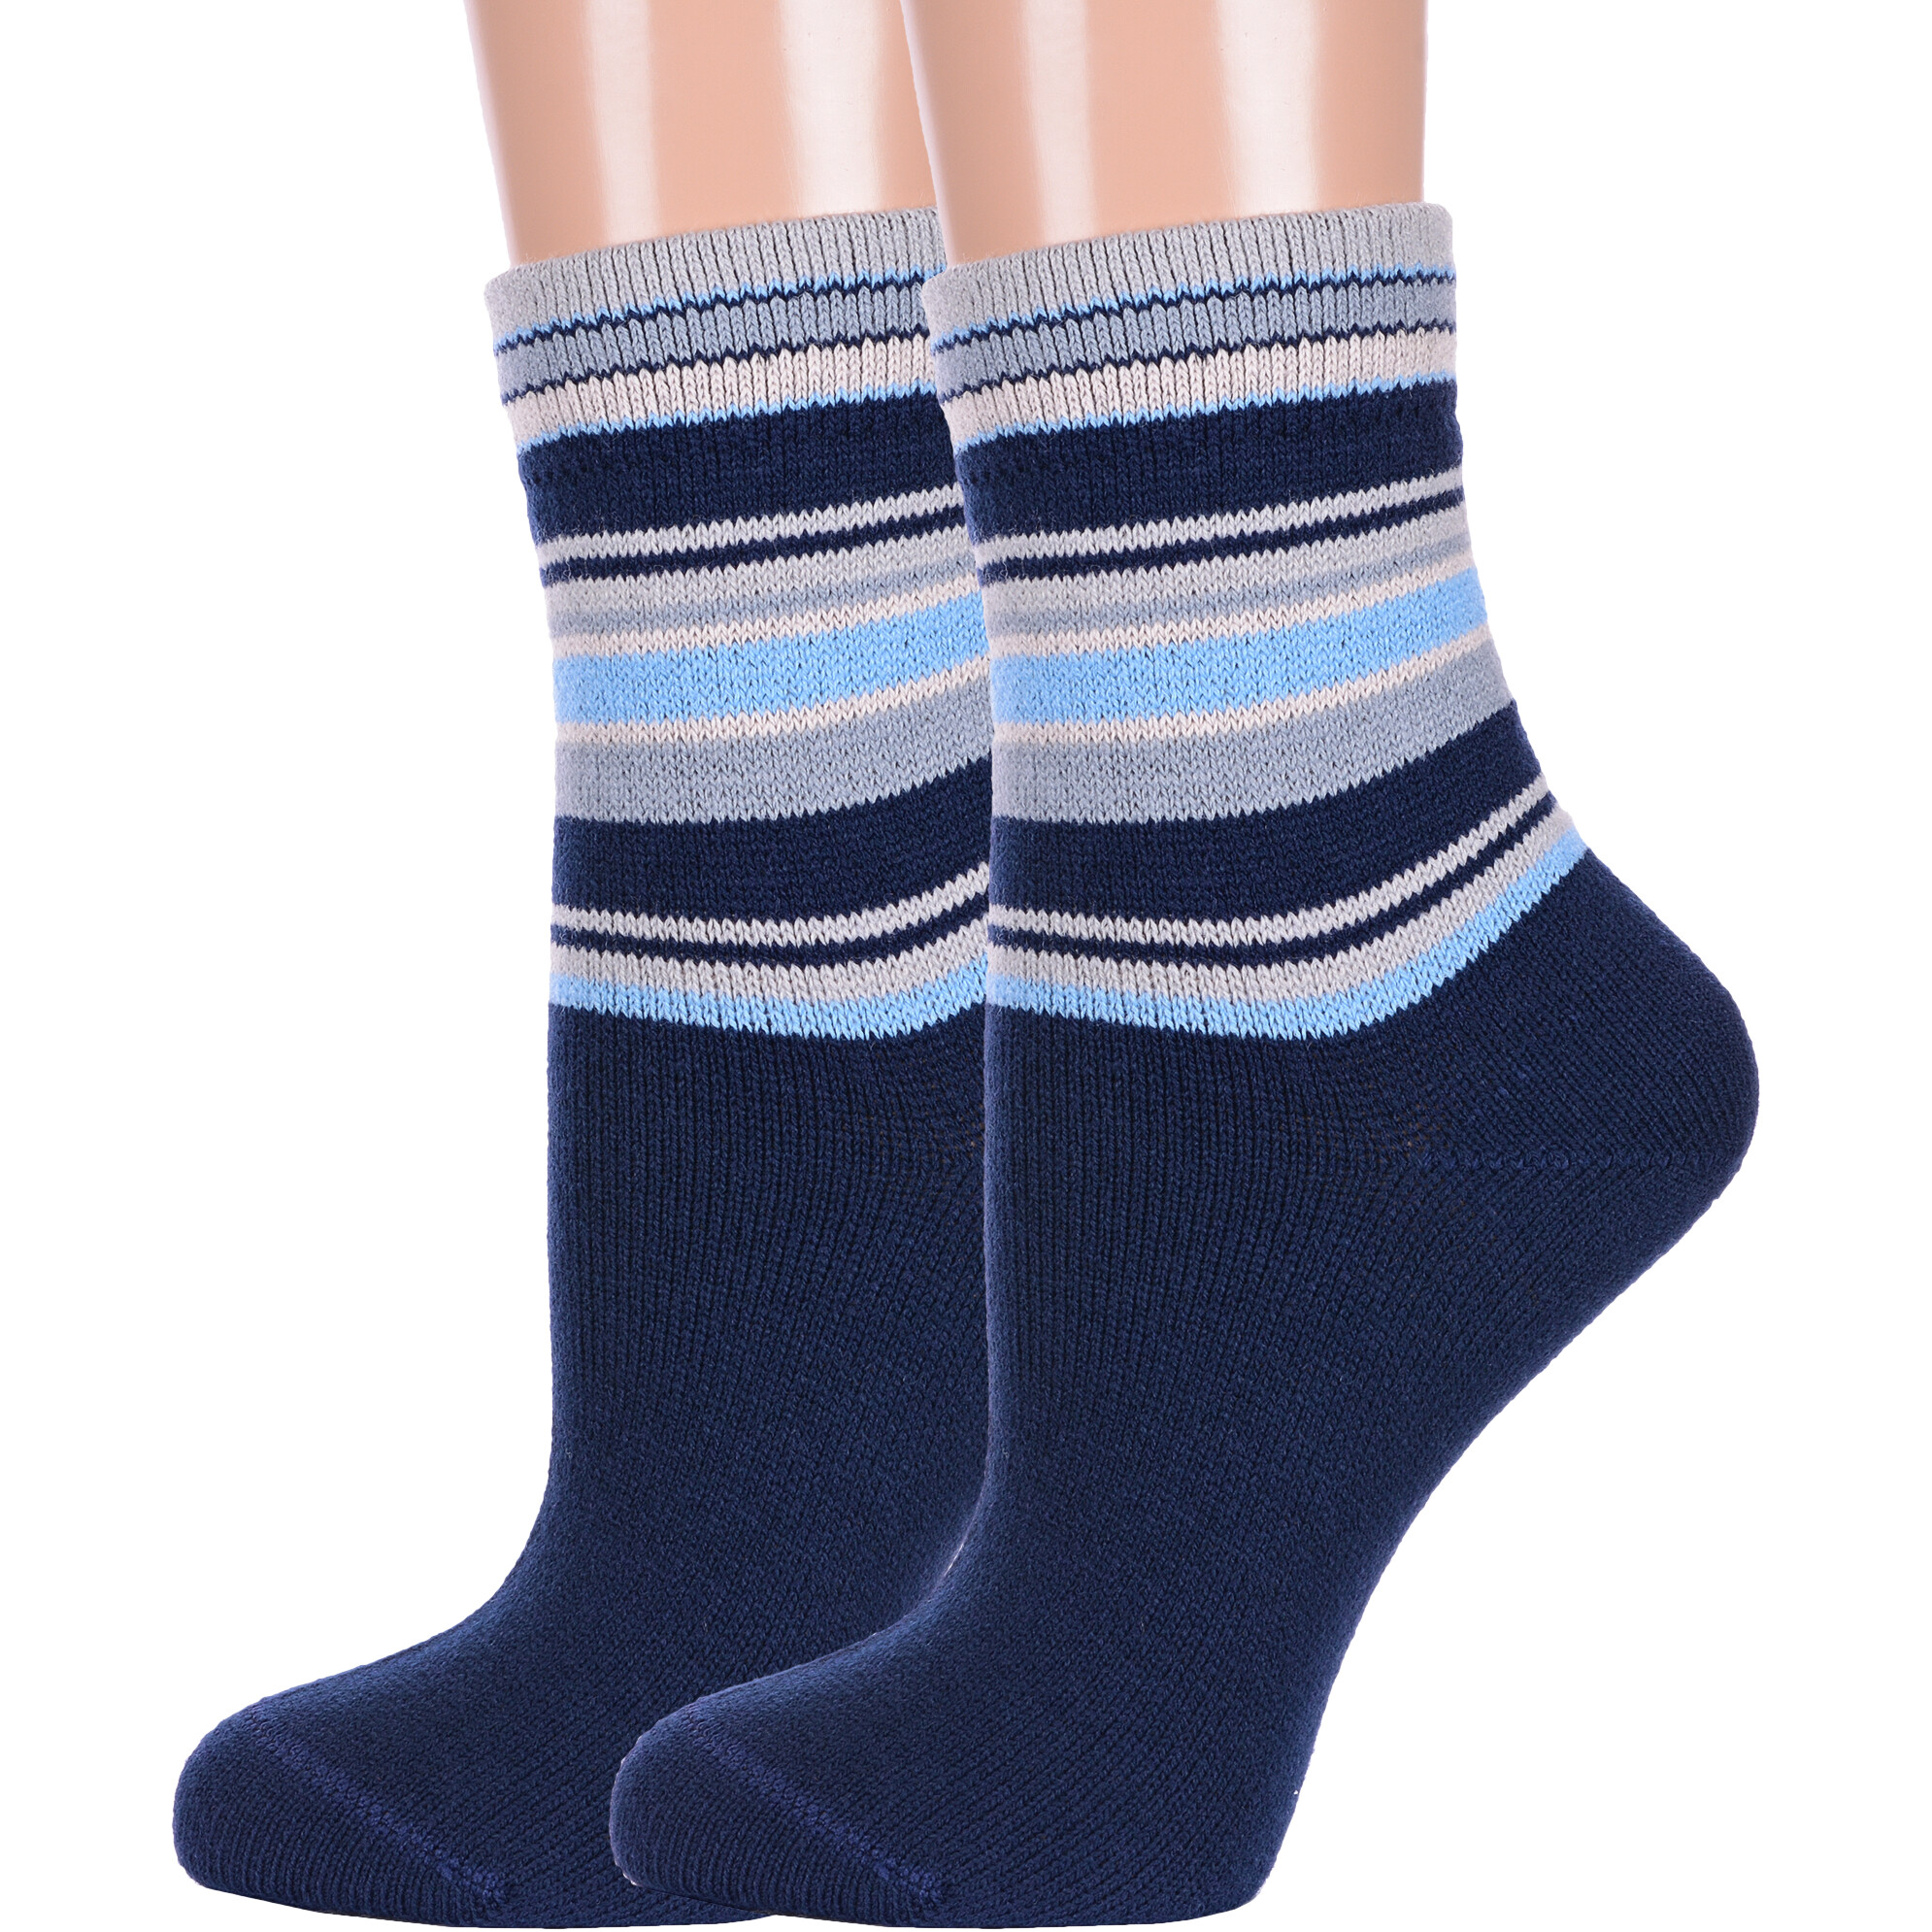 Комплект носков женских LorenzLine 2-В19 синих 23 2 пары